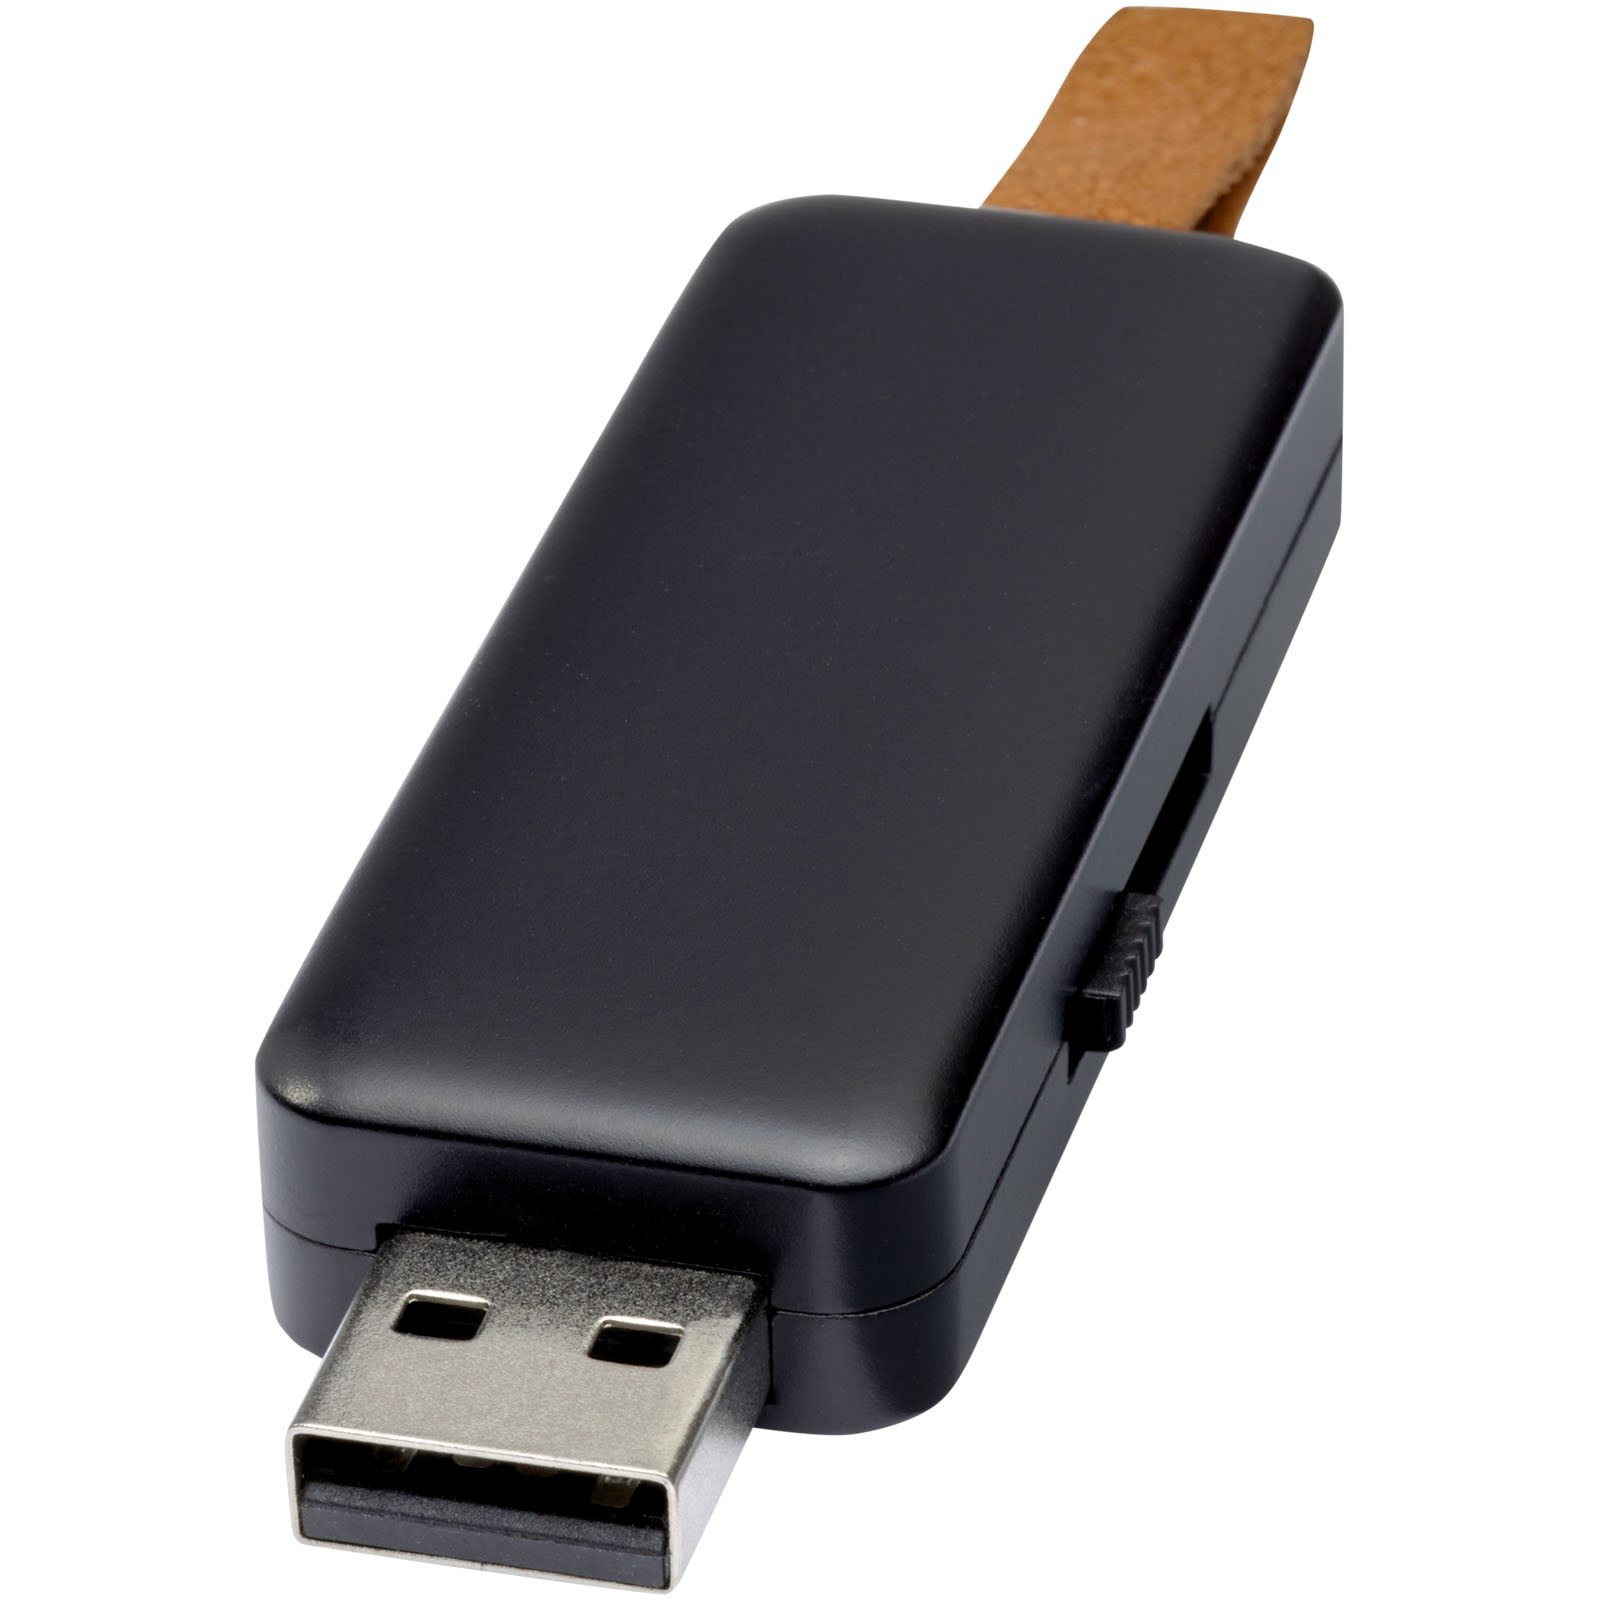 USB Flash Drives - Gleam 8GB light-up USB flash drive